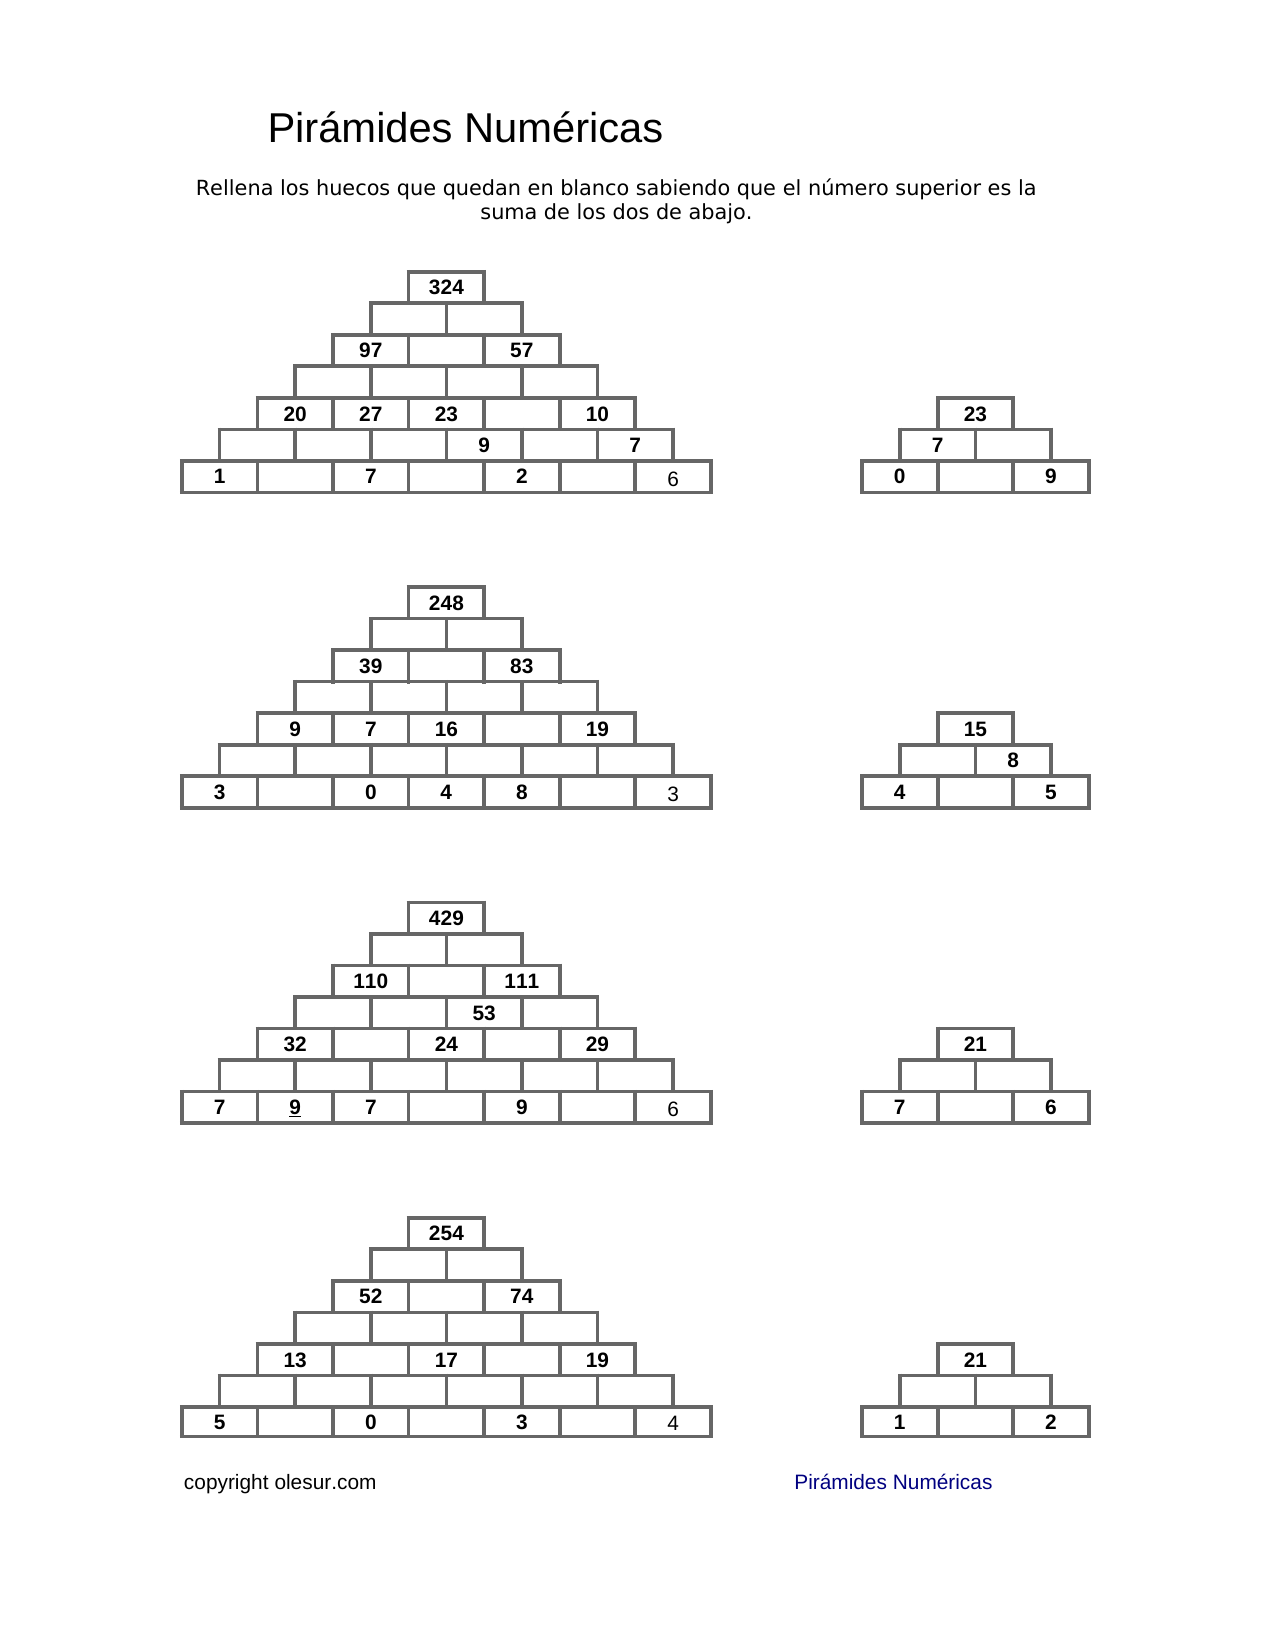 Descargar: Pirámides Matemáticas . – olesur